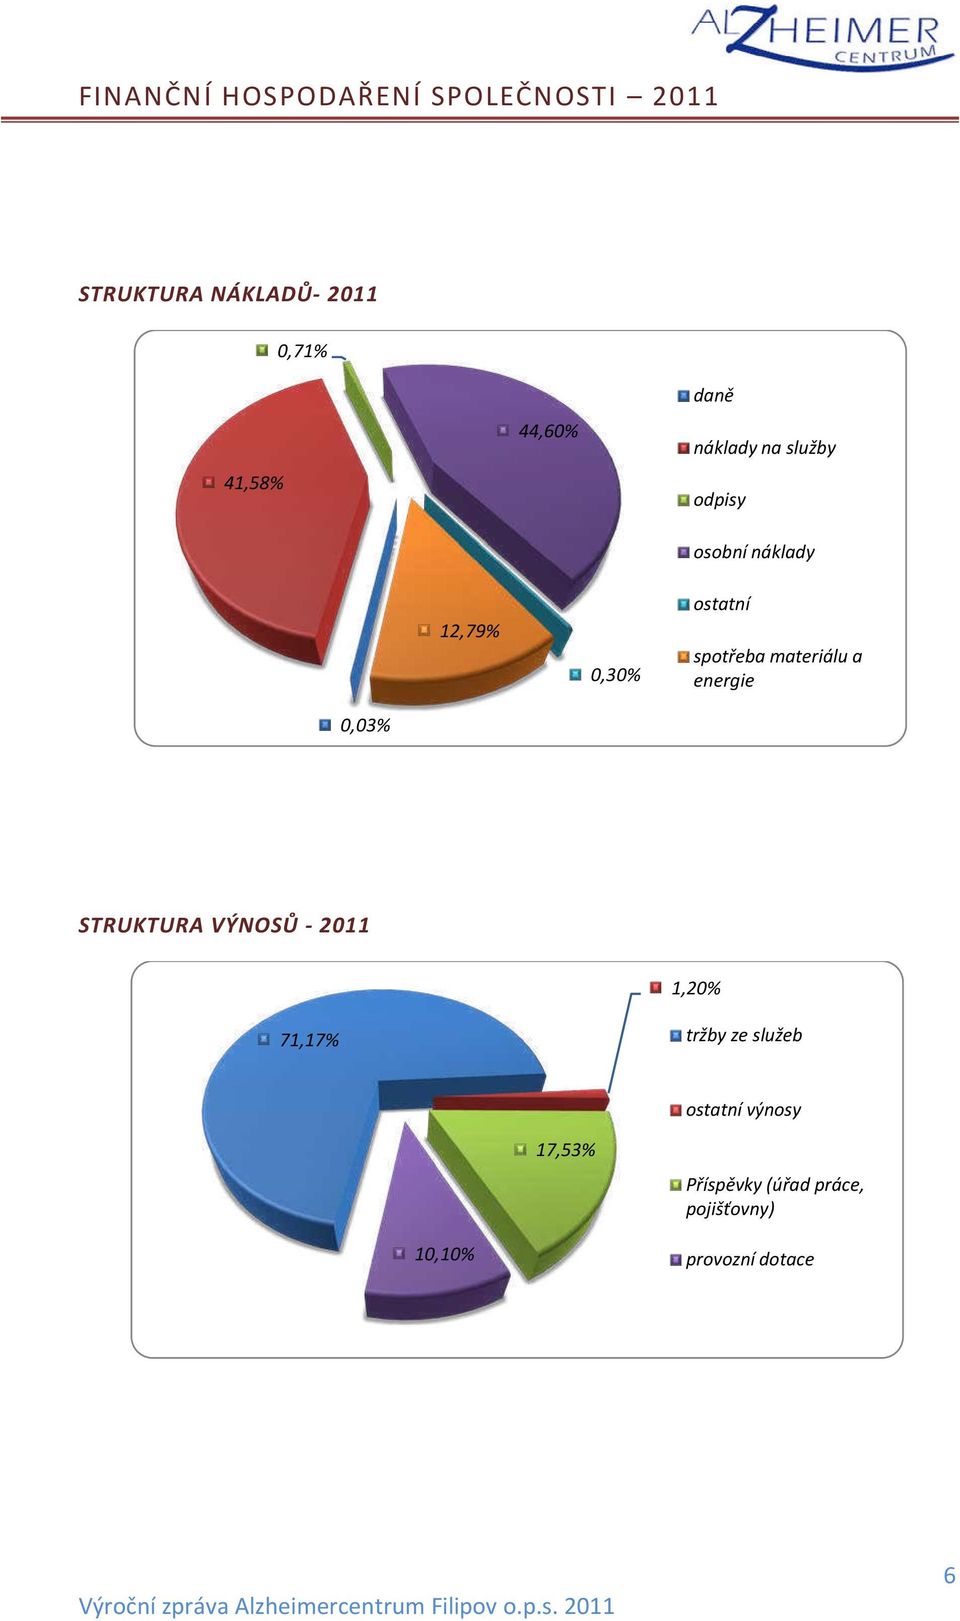 ateriálu a e ergie 0,03% STRUKTURA VÝNOSŮ - 2011 1,20% 71,17% trž y ze služe